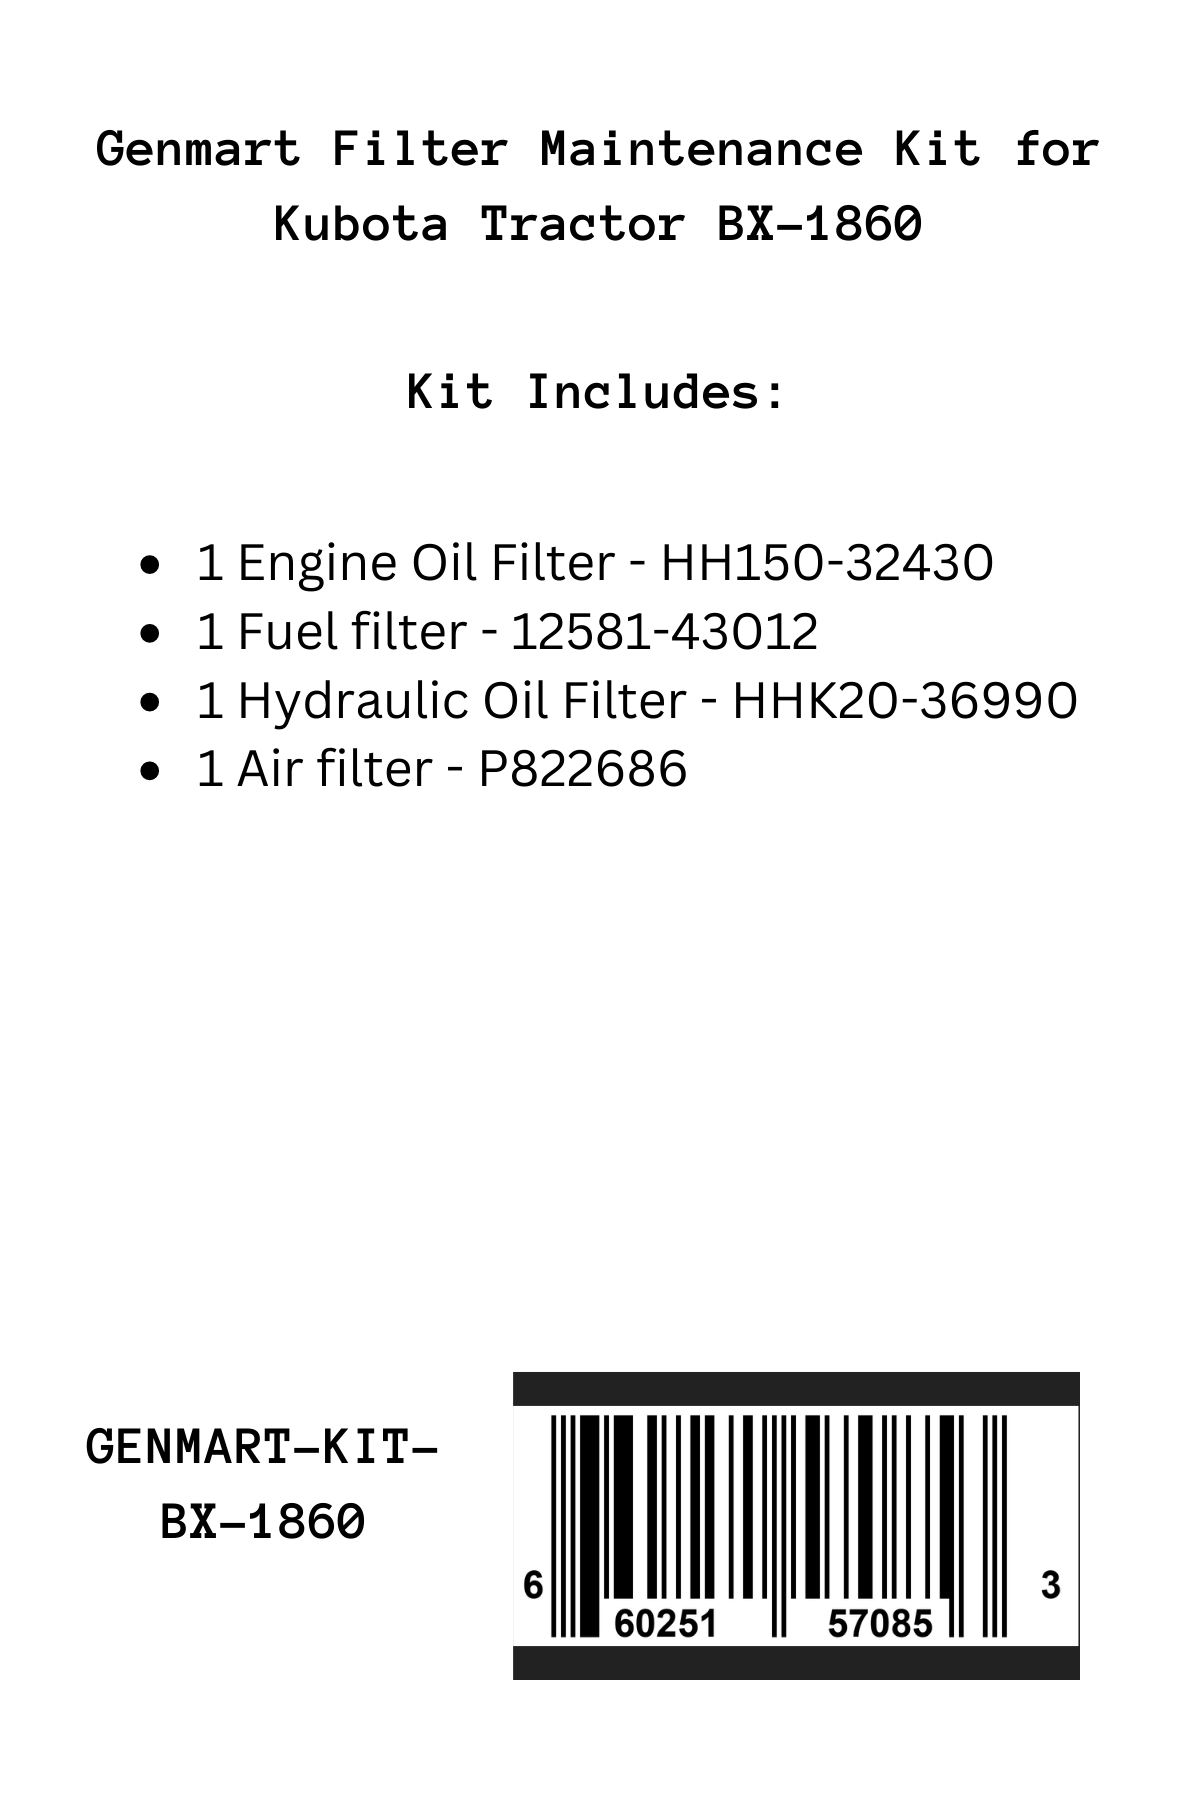 Genmart Maintenance Kit for Kubota Tractor BX-1860